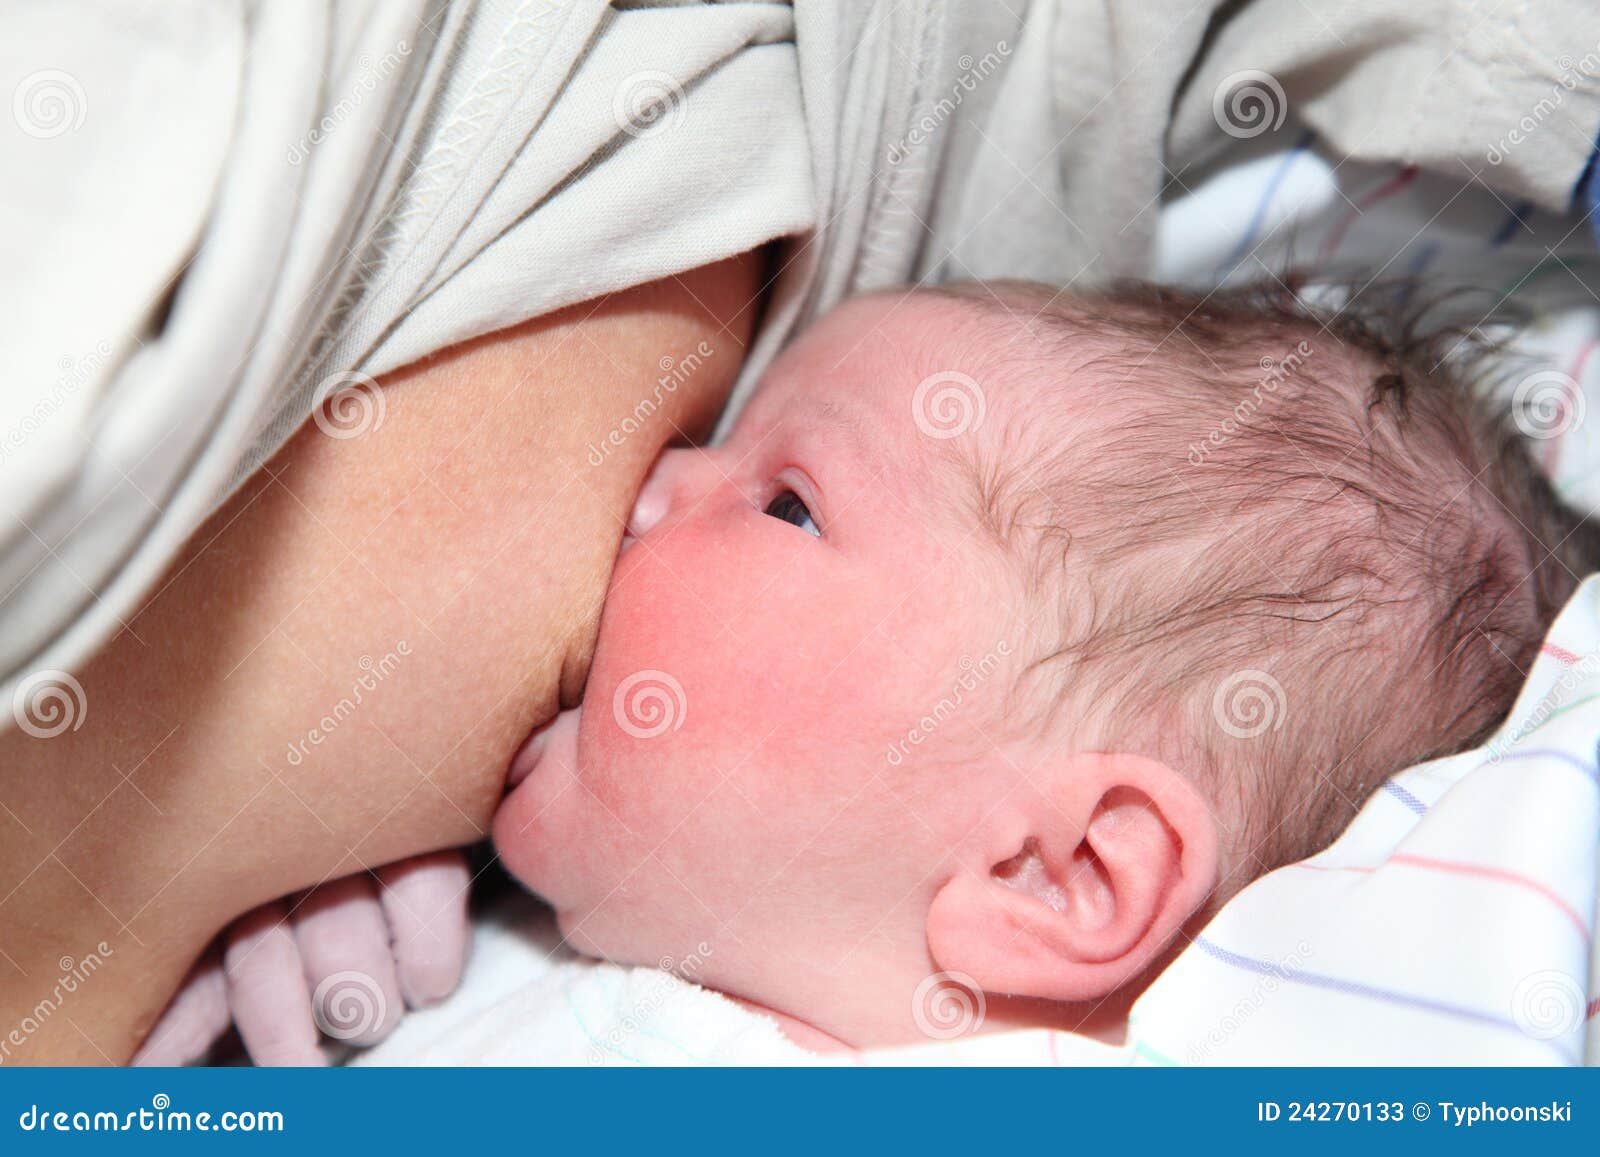 Кричит после кормления. Грудное вскармливание новорожденных в первые дни. Младенец плачет кормление грудью. Грудь у новорожденной девочки.